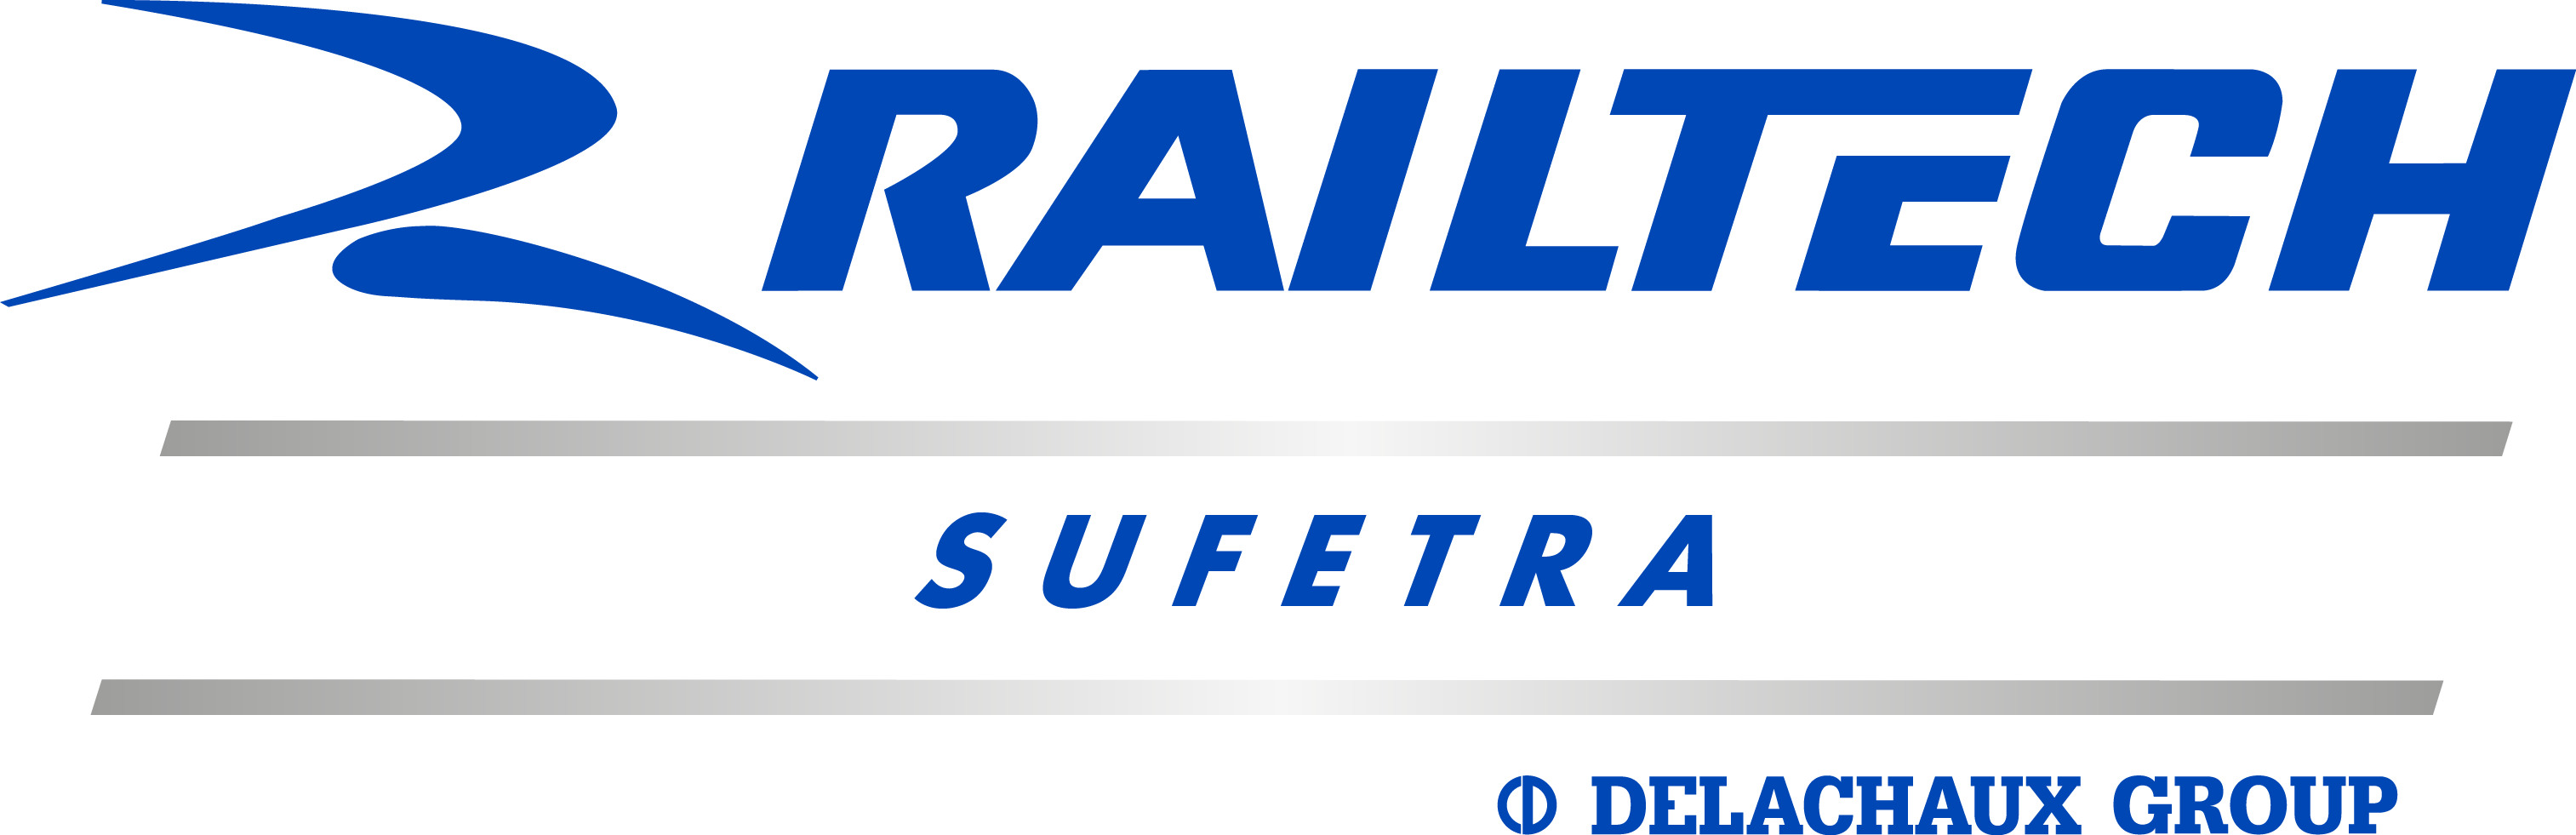 Logo R + Railtech SUFETRA BLEU